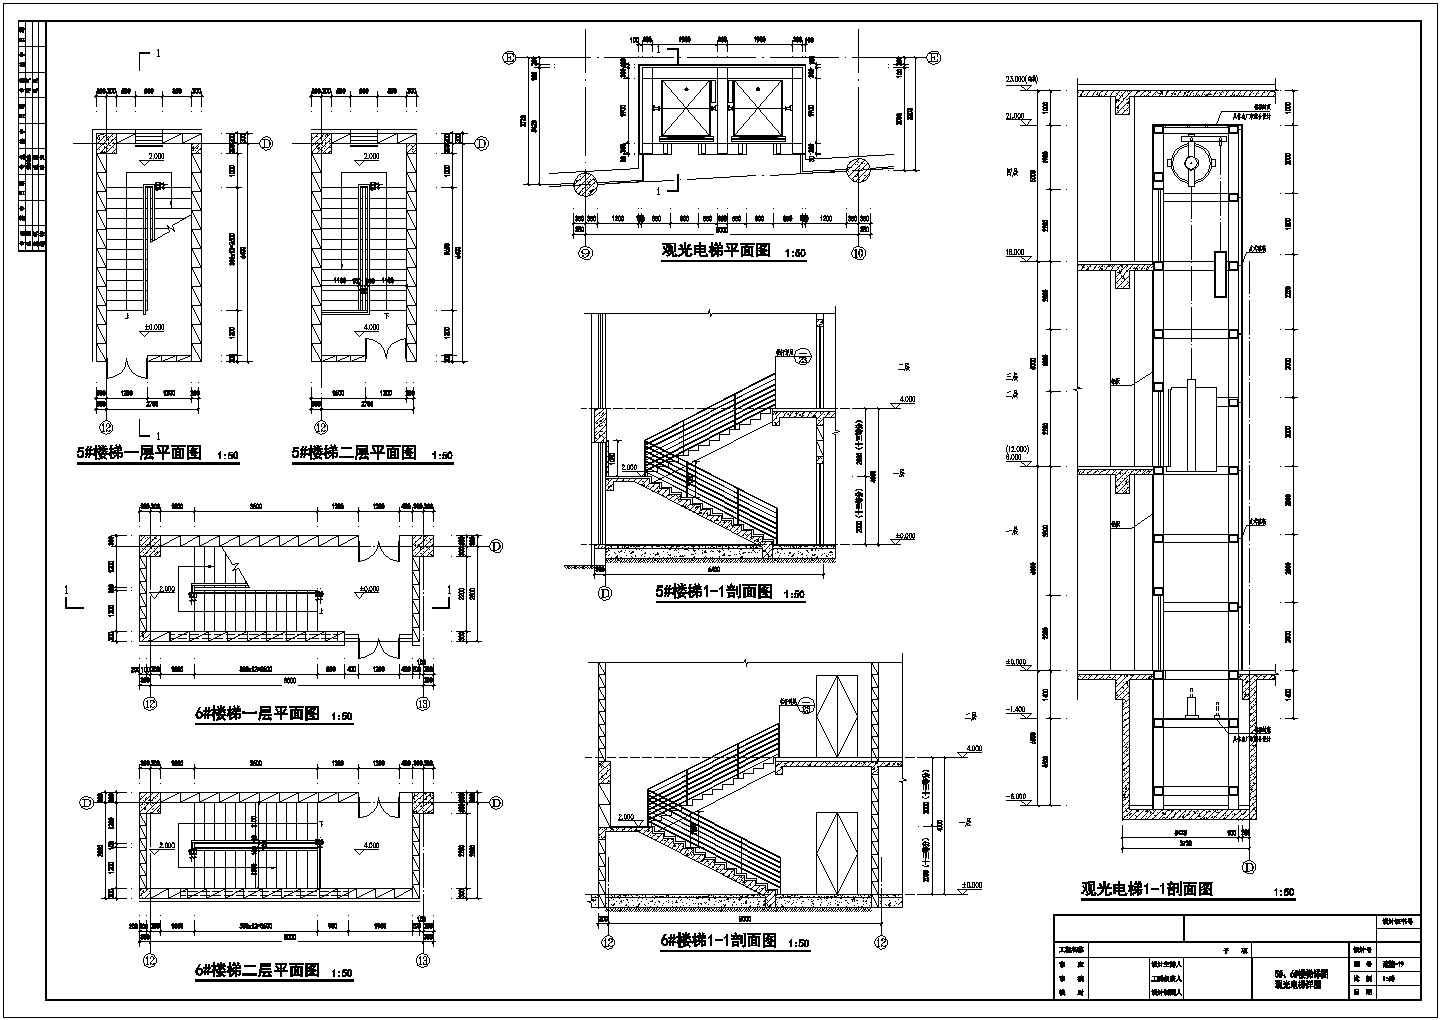 某长116.4米 宽55.2米 4+1地下层16572.81平博物馆建筑施工图卫生间详图 1#-8#楼梯详图 台阶详图 1#-3#电梯详图 自动扶梯CAD详图